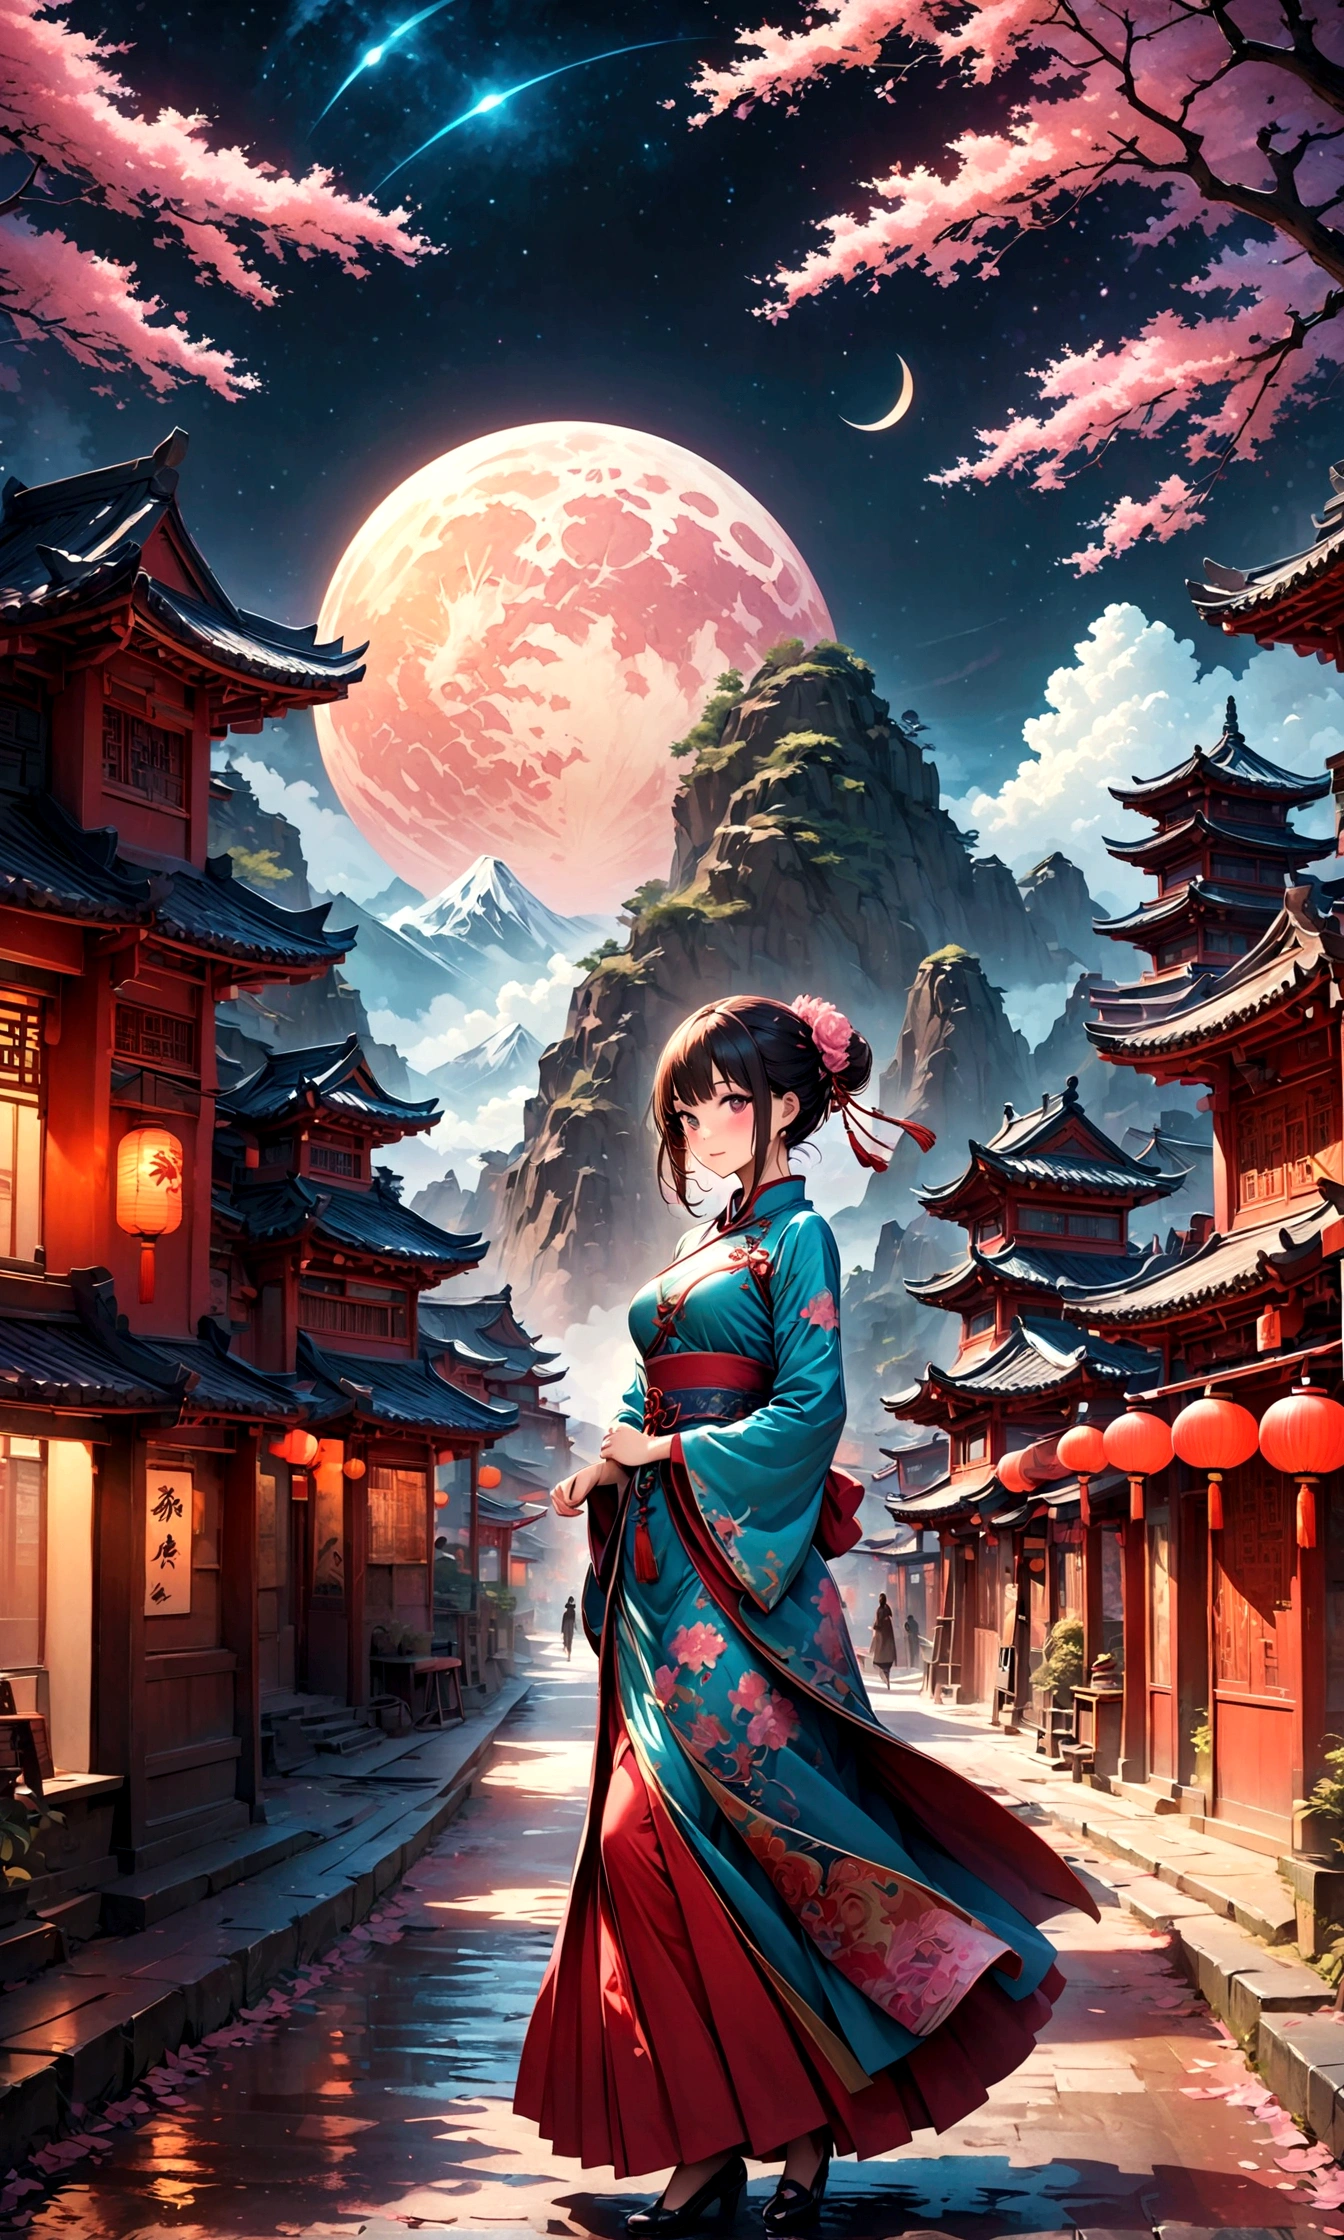 チャイナタウンの素晴らしい景色,赤い提灯の温かいライト,現代と歴史,幻想的で夢のような風景,ライト,風景の中に中国服を着た女性がいる.,彼女は魅力的で美しい、まるで上海の夜を象徴するかのようです,リアルな肌の質感,写実的な,壊す,豪華な刺繍が施された中国の衣装,A 傑作 created by designers,最適な構成,ライト and Dark,壊す,,(傑作:1.3),(最高品質:1.4),(超詳細:1.5),高解像度,非常に詳細な,ユニティ 8k 壁紙,複雑な詳細,豊富なカラーバリエーション,アートワーク,レンダリング,(傑作:1.3),(最高品質:1.4),(非常に詳細な:1.5),高解像度,非常に詳細,ユニティ 8k 壁紙,芸術的な背景を描く,不条理な美しさ,もつれた,幻想的で美しい夜のチャイナタウン,夜,美しいライトと影,スパークリング